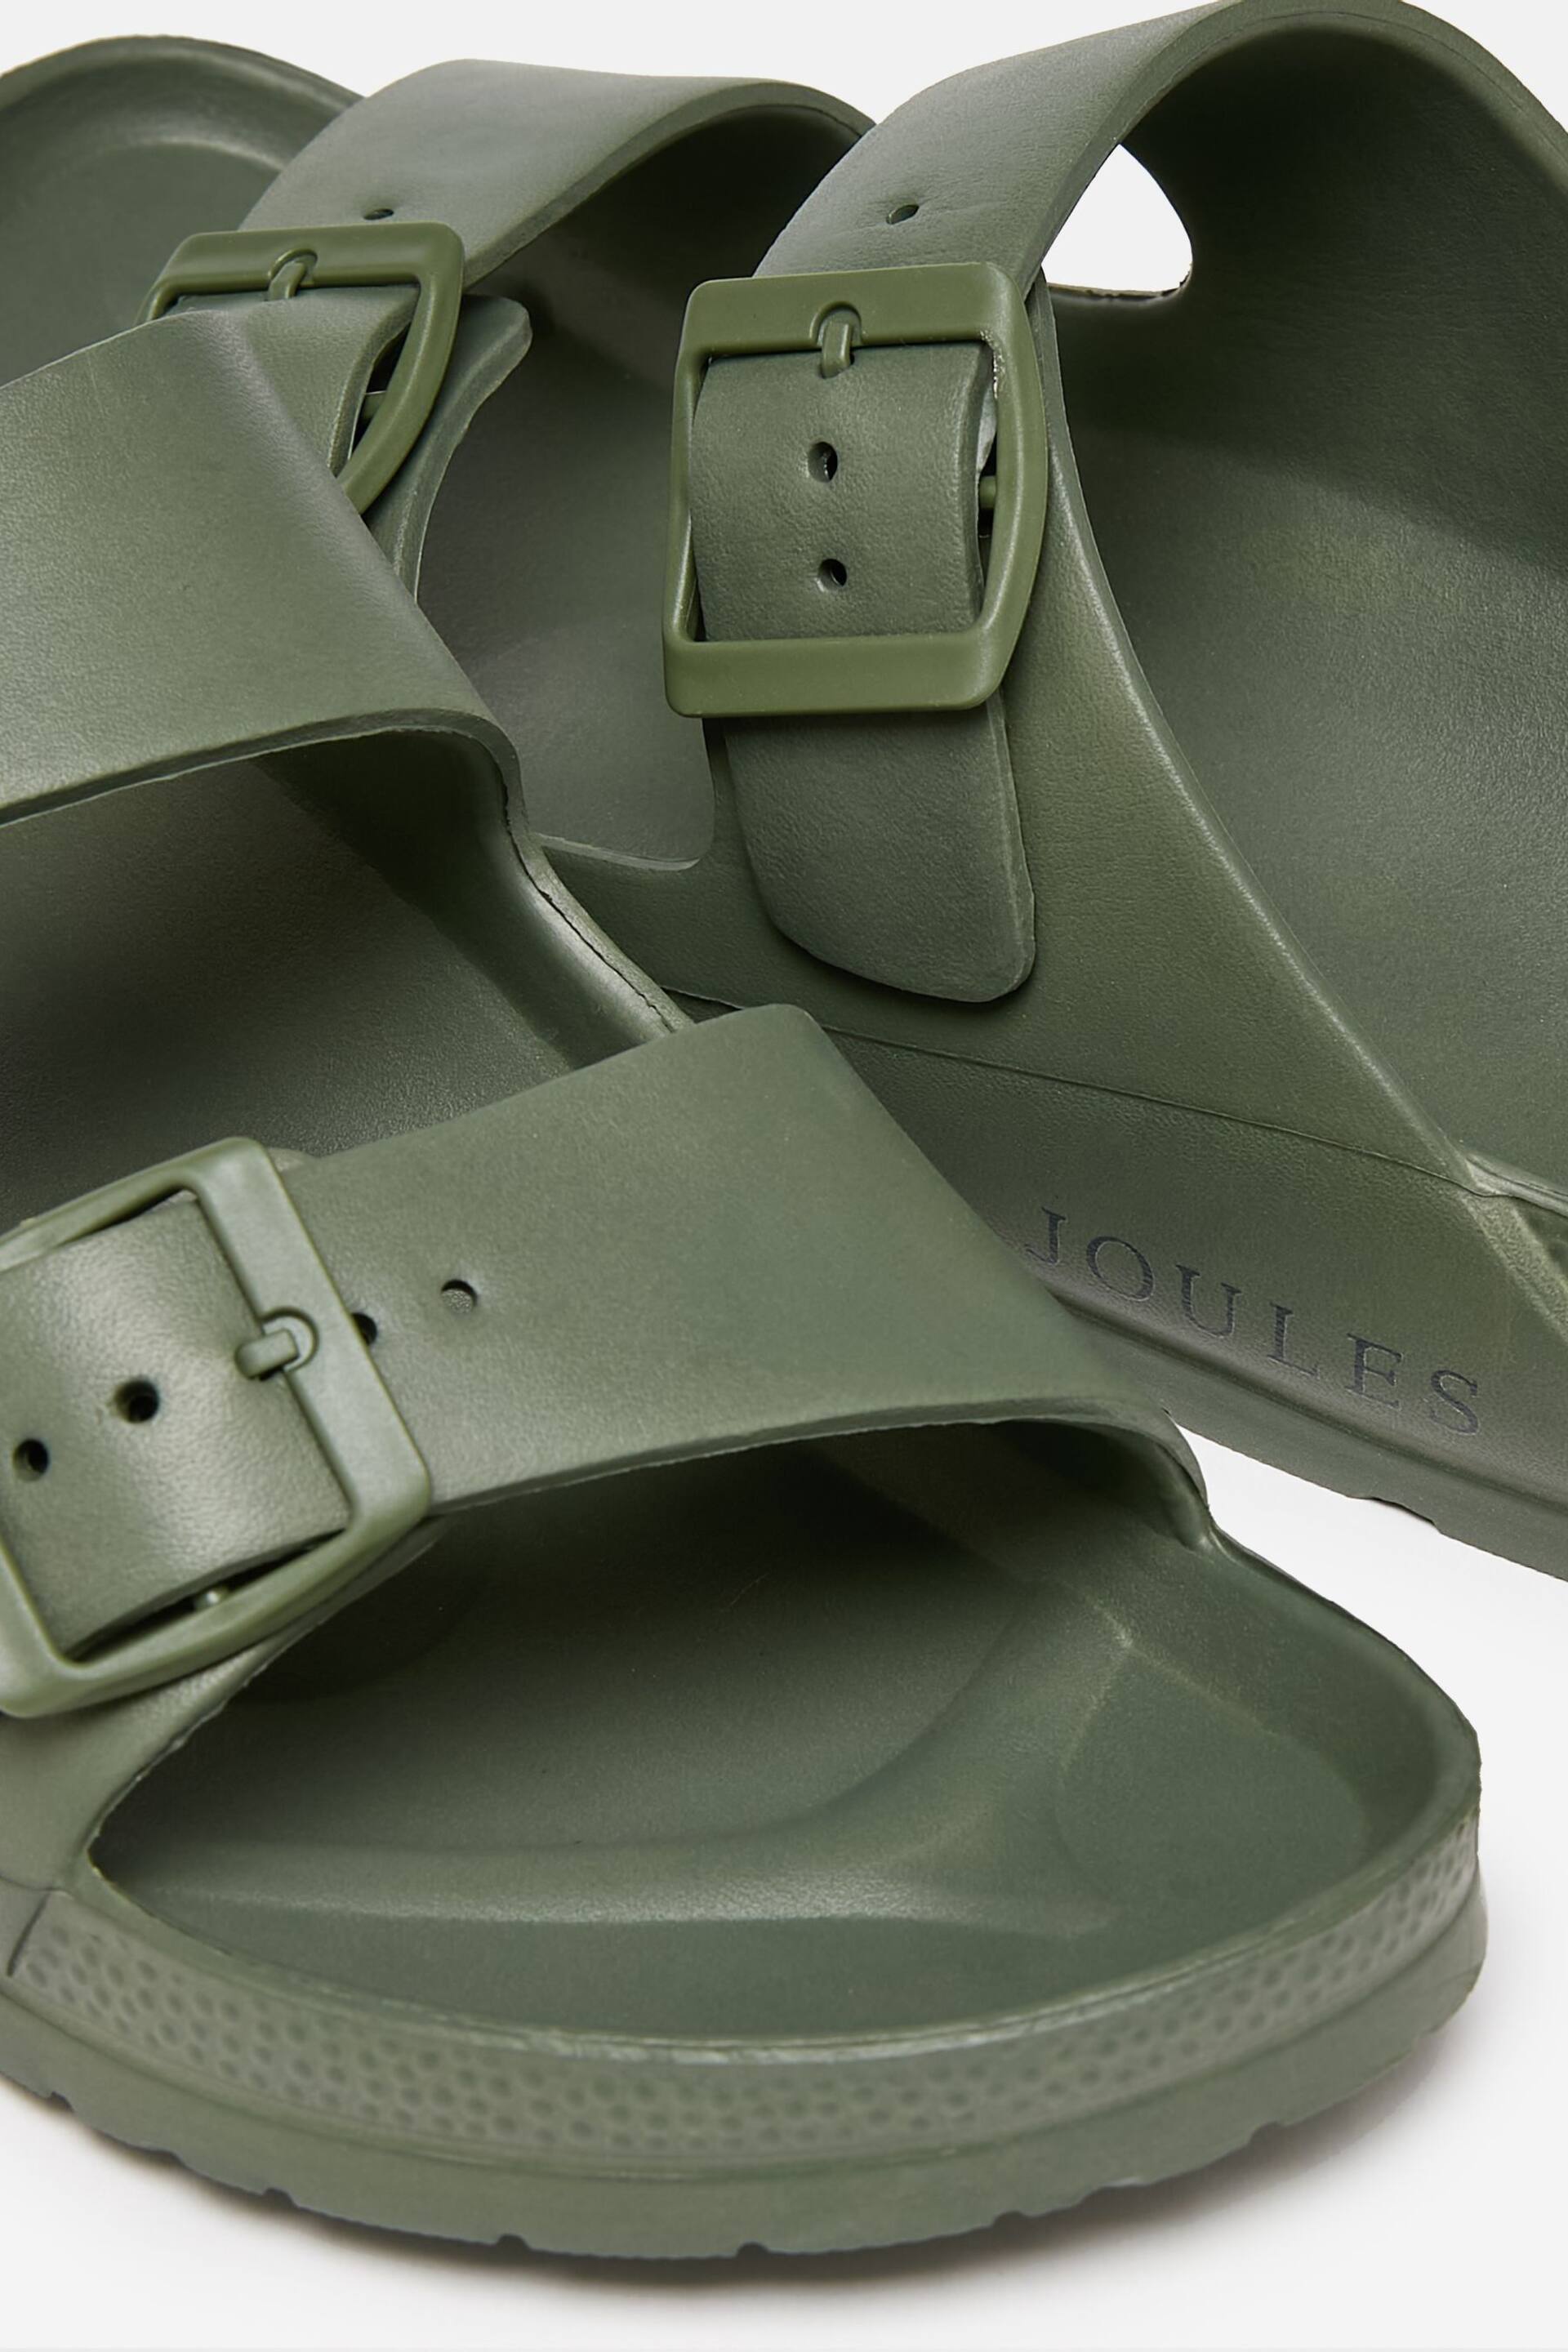 Joules Sunseeker Khaki Green EVA Rubber Sliders - Image 4 of 5